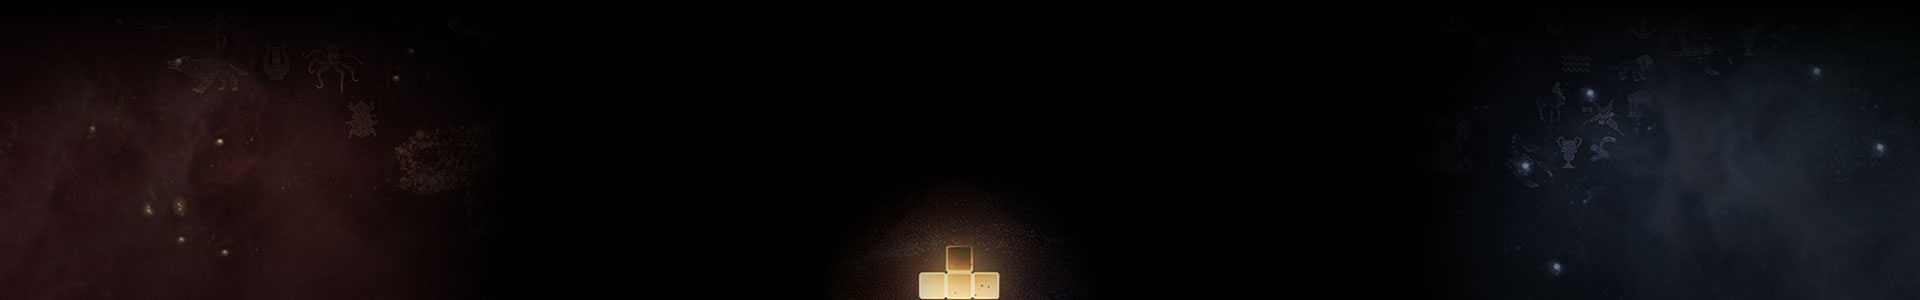 Une pièce de Tetris brillante parmi les étoiles.